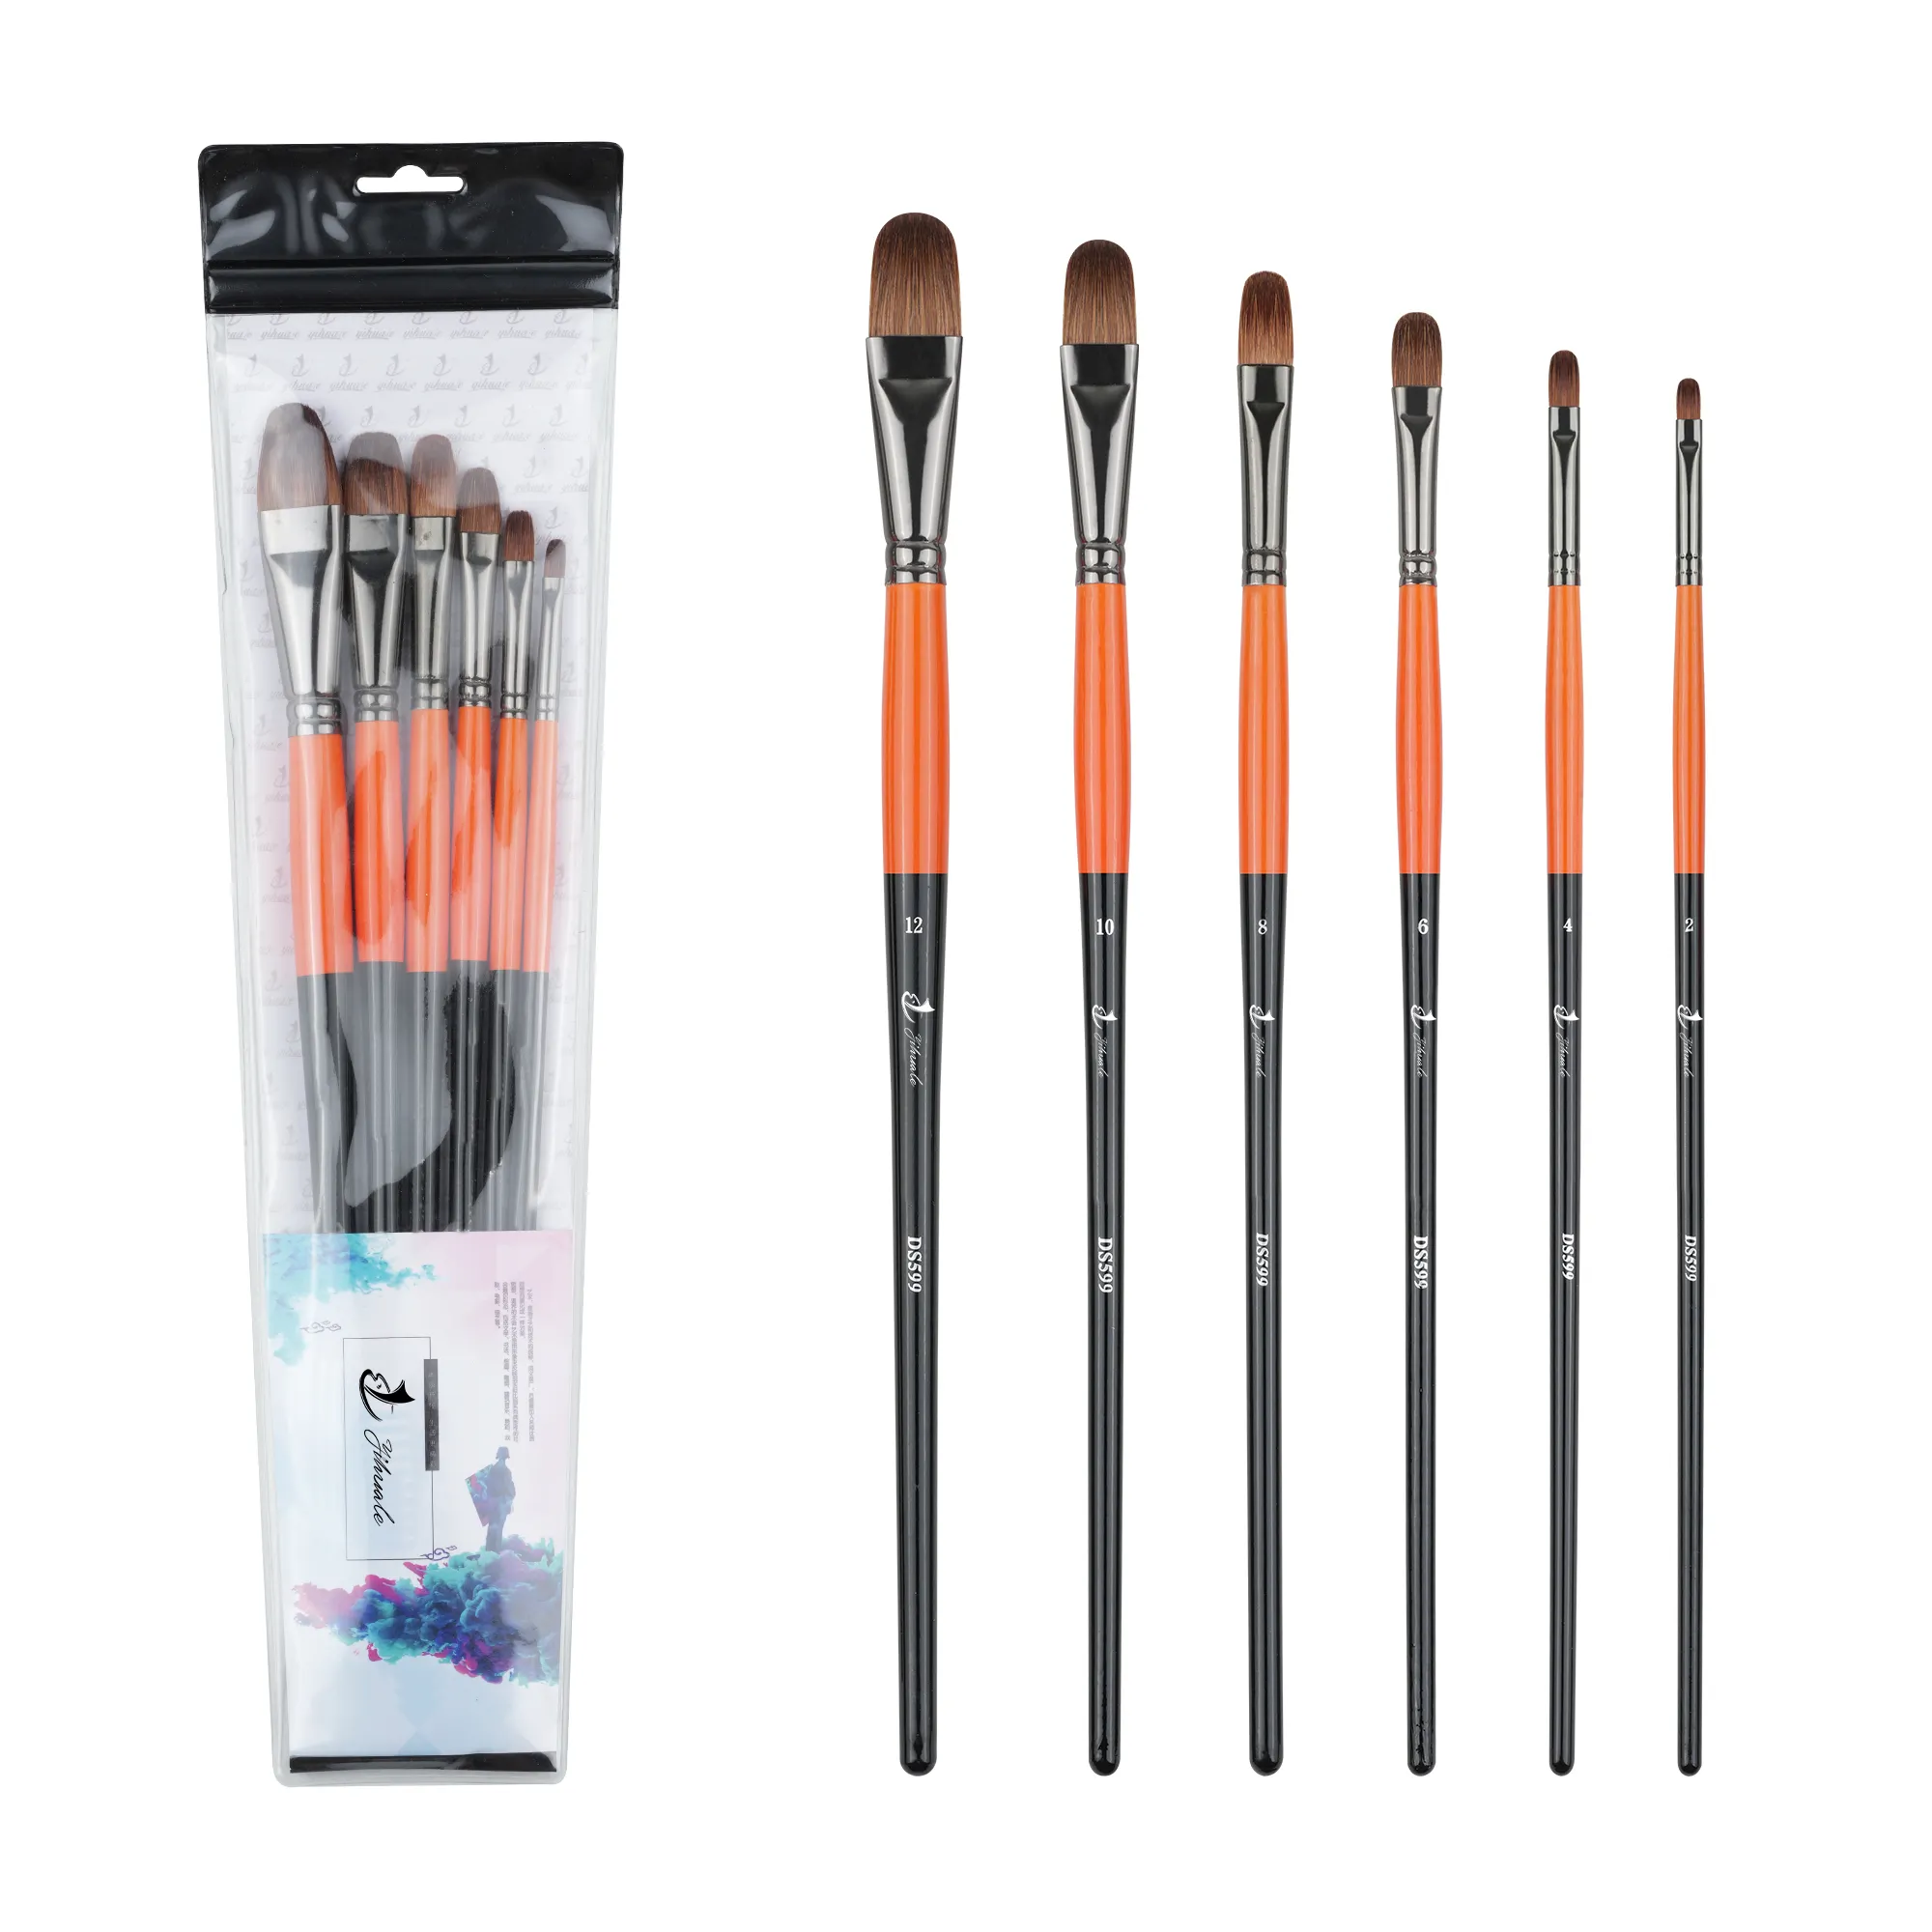 Üretmektedir 6 adet uzun saplı boya fırçaları Filbert fırça detay yağlıboya sanatçı yağ fırçası naylon çakal saç plastik kolu